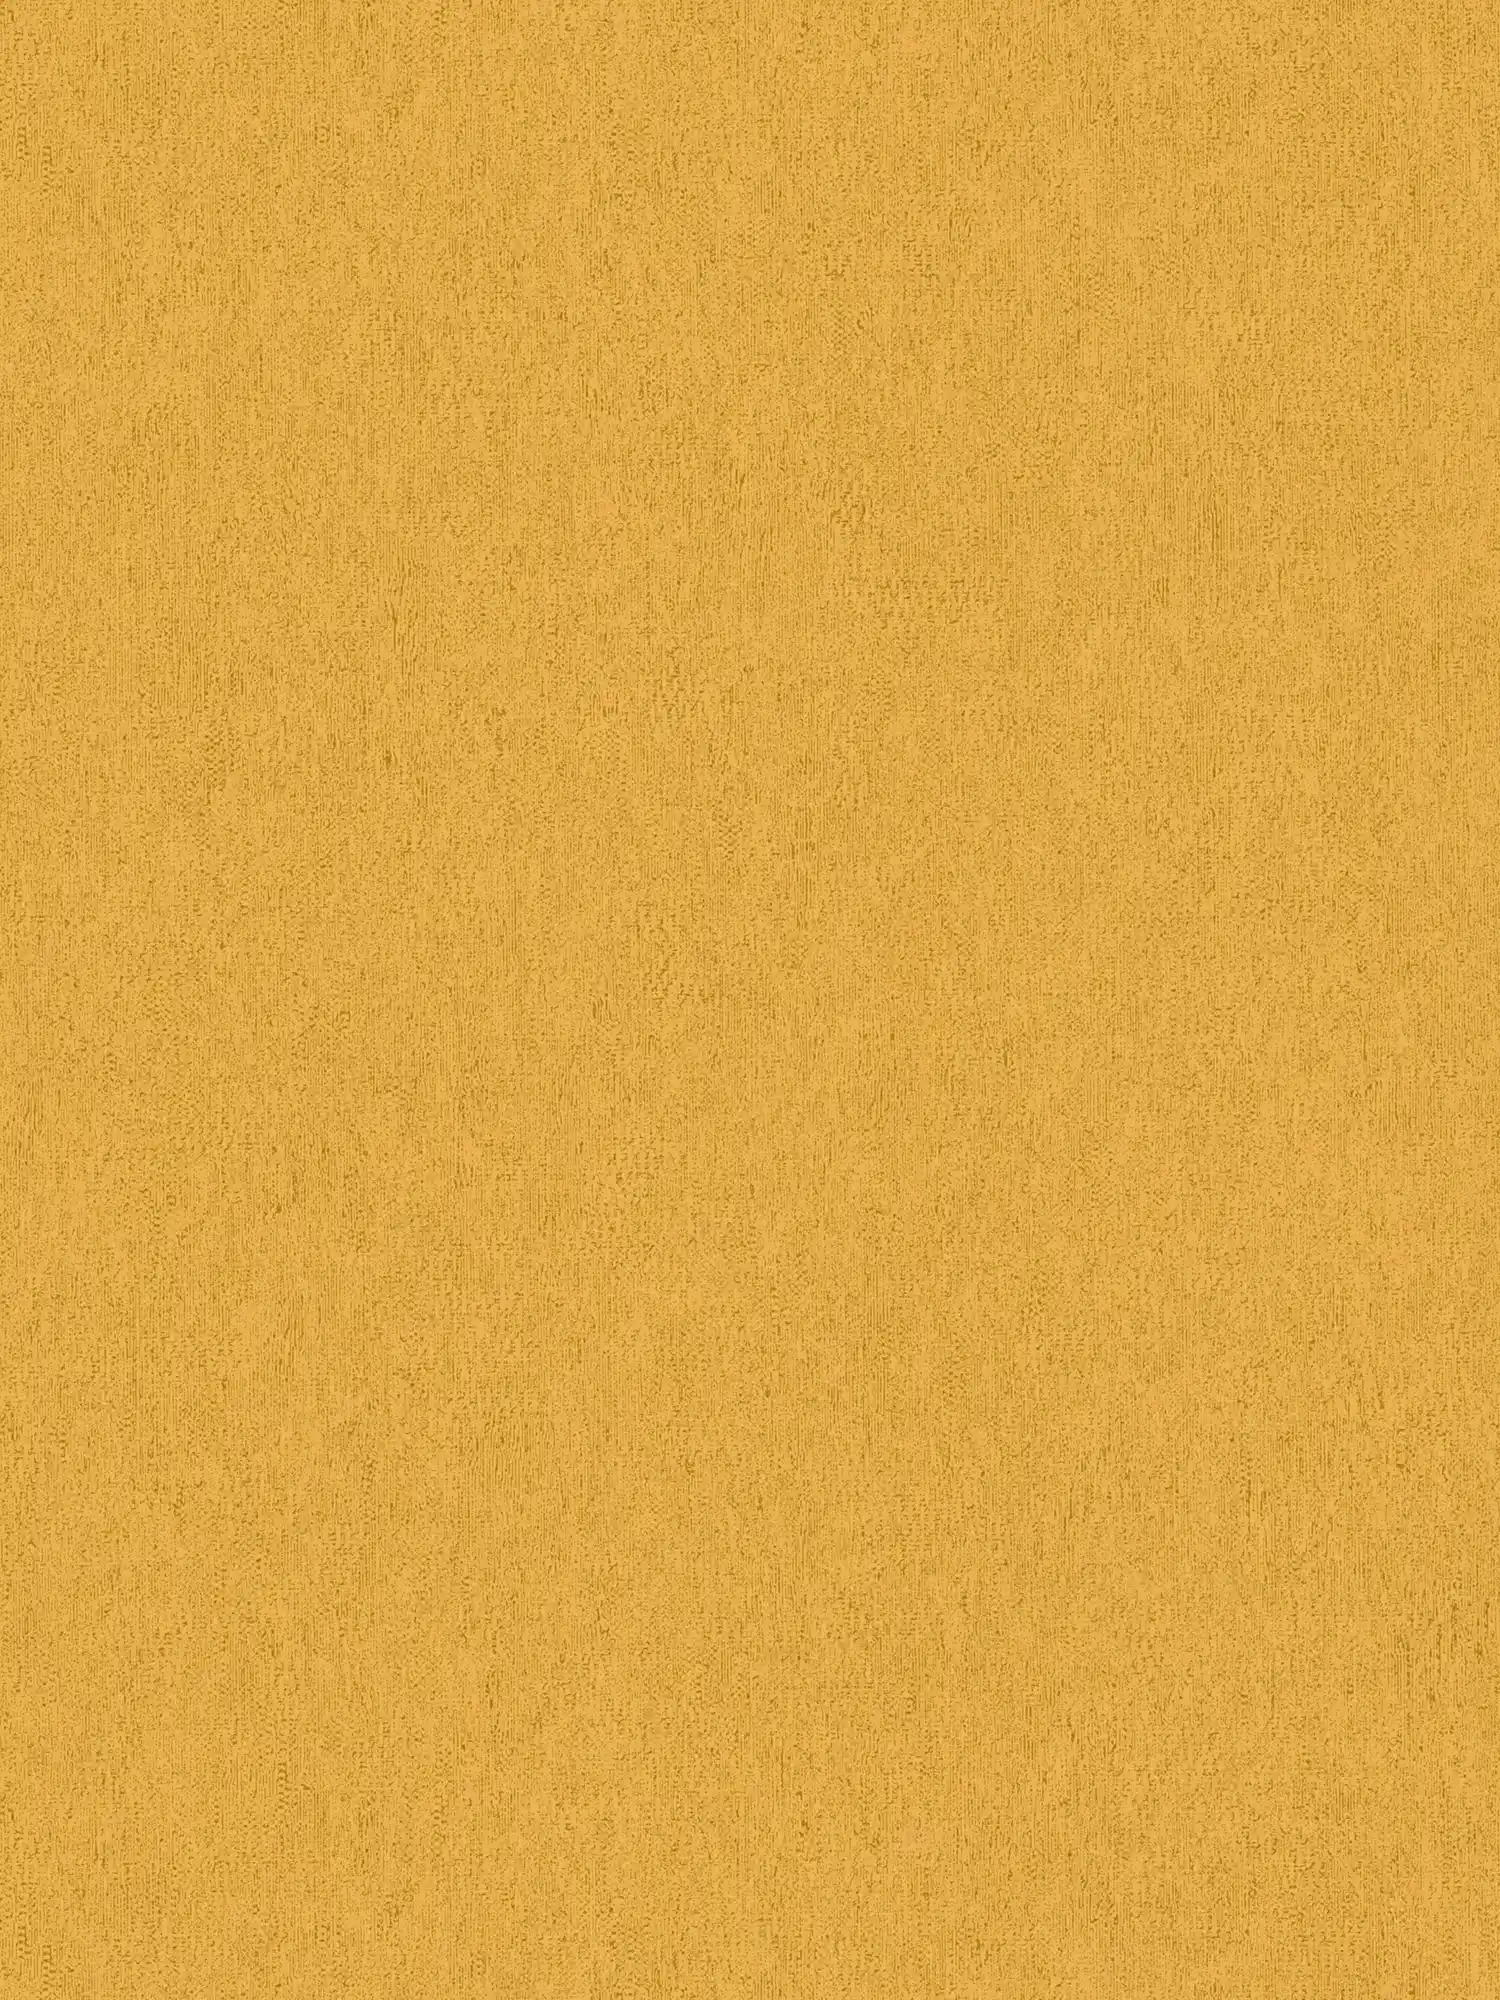 Papel pintado liso con estructura óptica mate y lisa - amarillo
